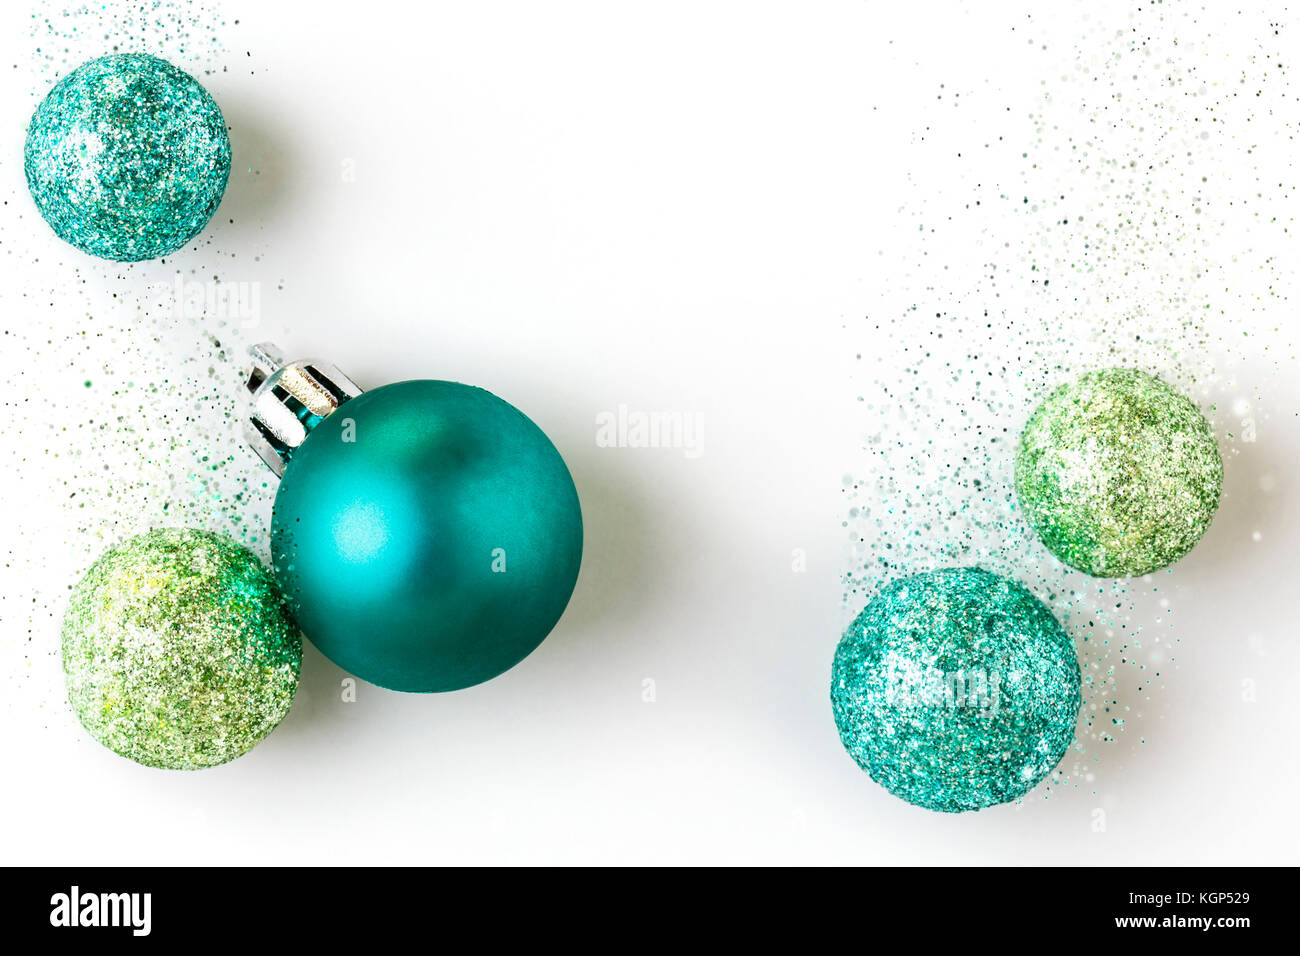 Hermosa, brillante, moderno, contemporáneo de azul y verde con decoraciones navideñas adornos brillantes glitter aislado sobre fondo blanco. Foto de stock